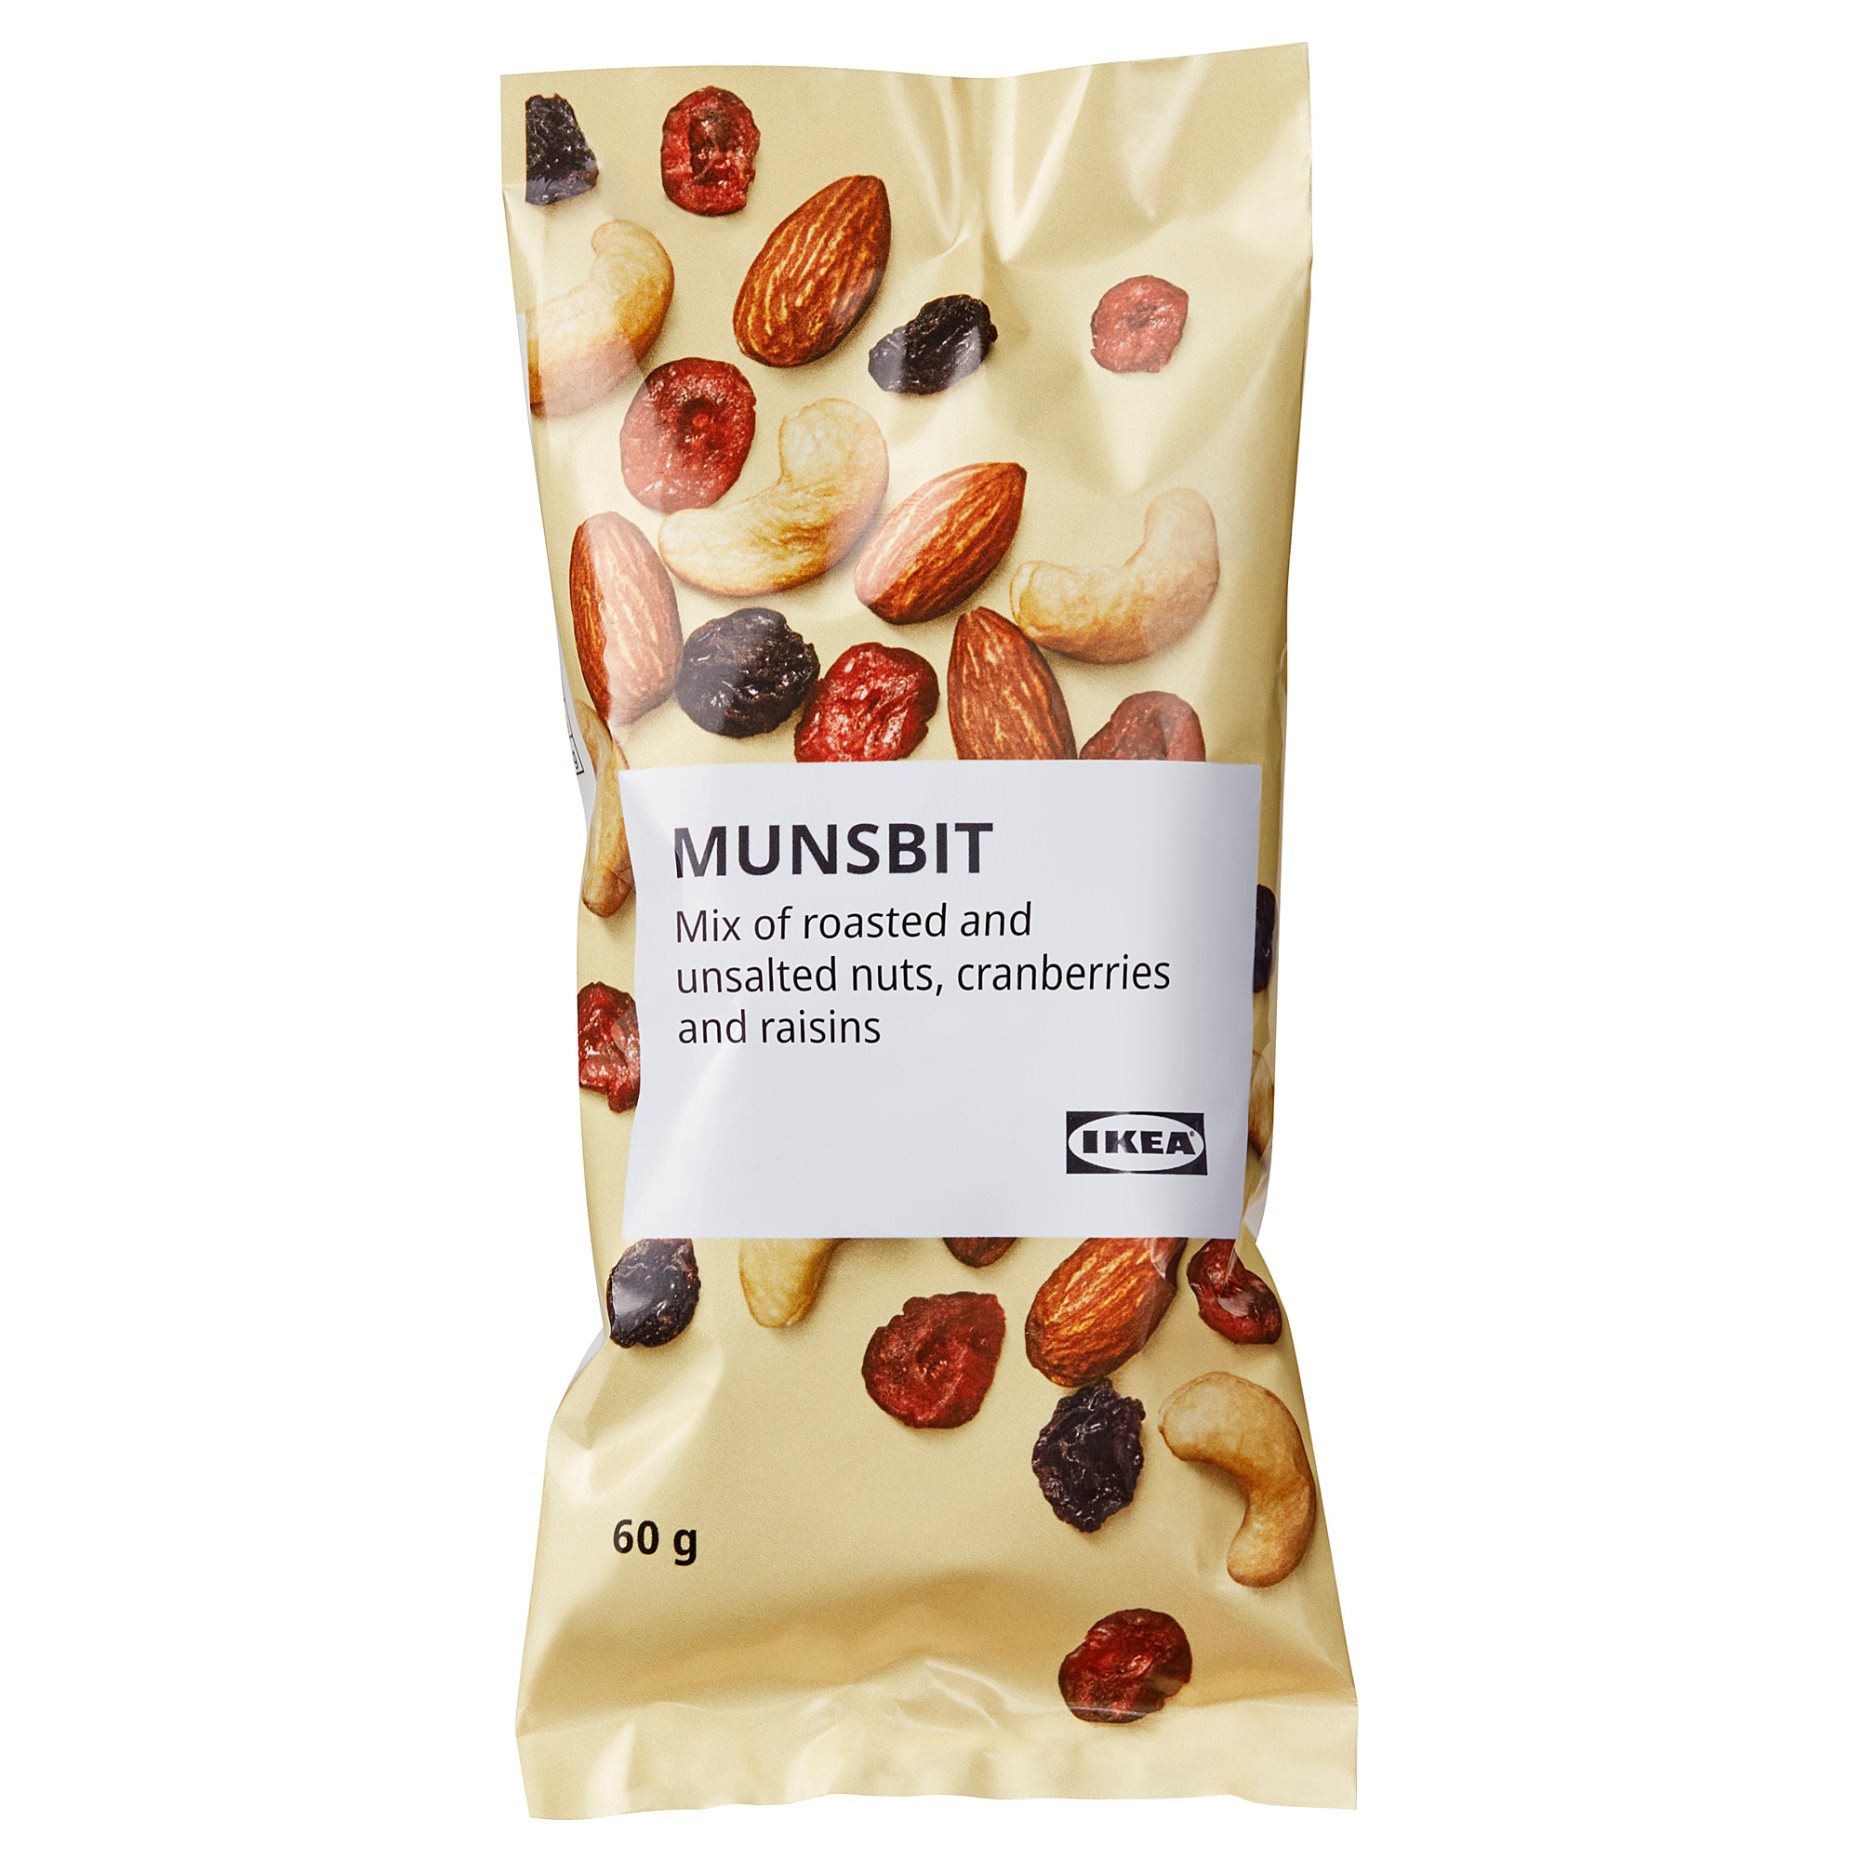 MUNSBIT, ψημένοι ανάλατοι ξηροί καρποί με cranberry και σταφίδες, 60 g, 205.002.52